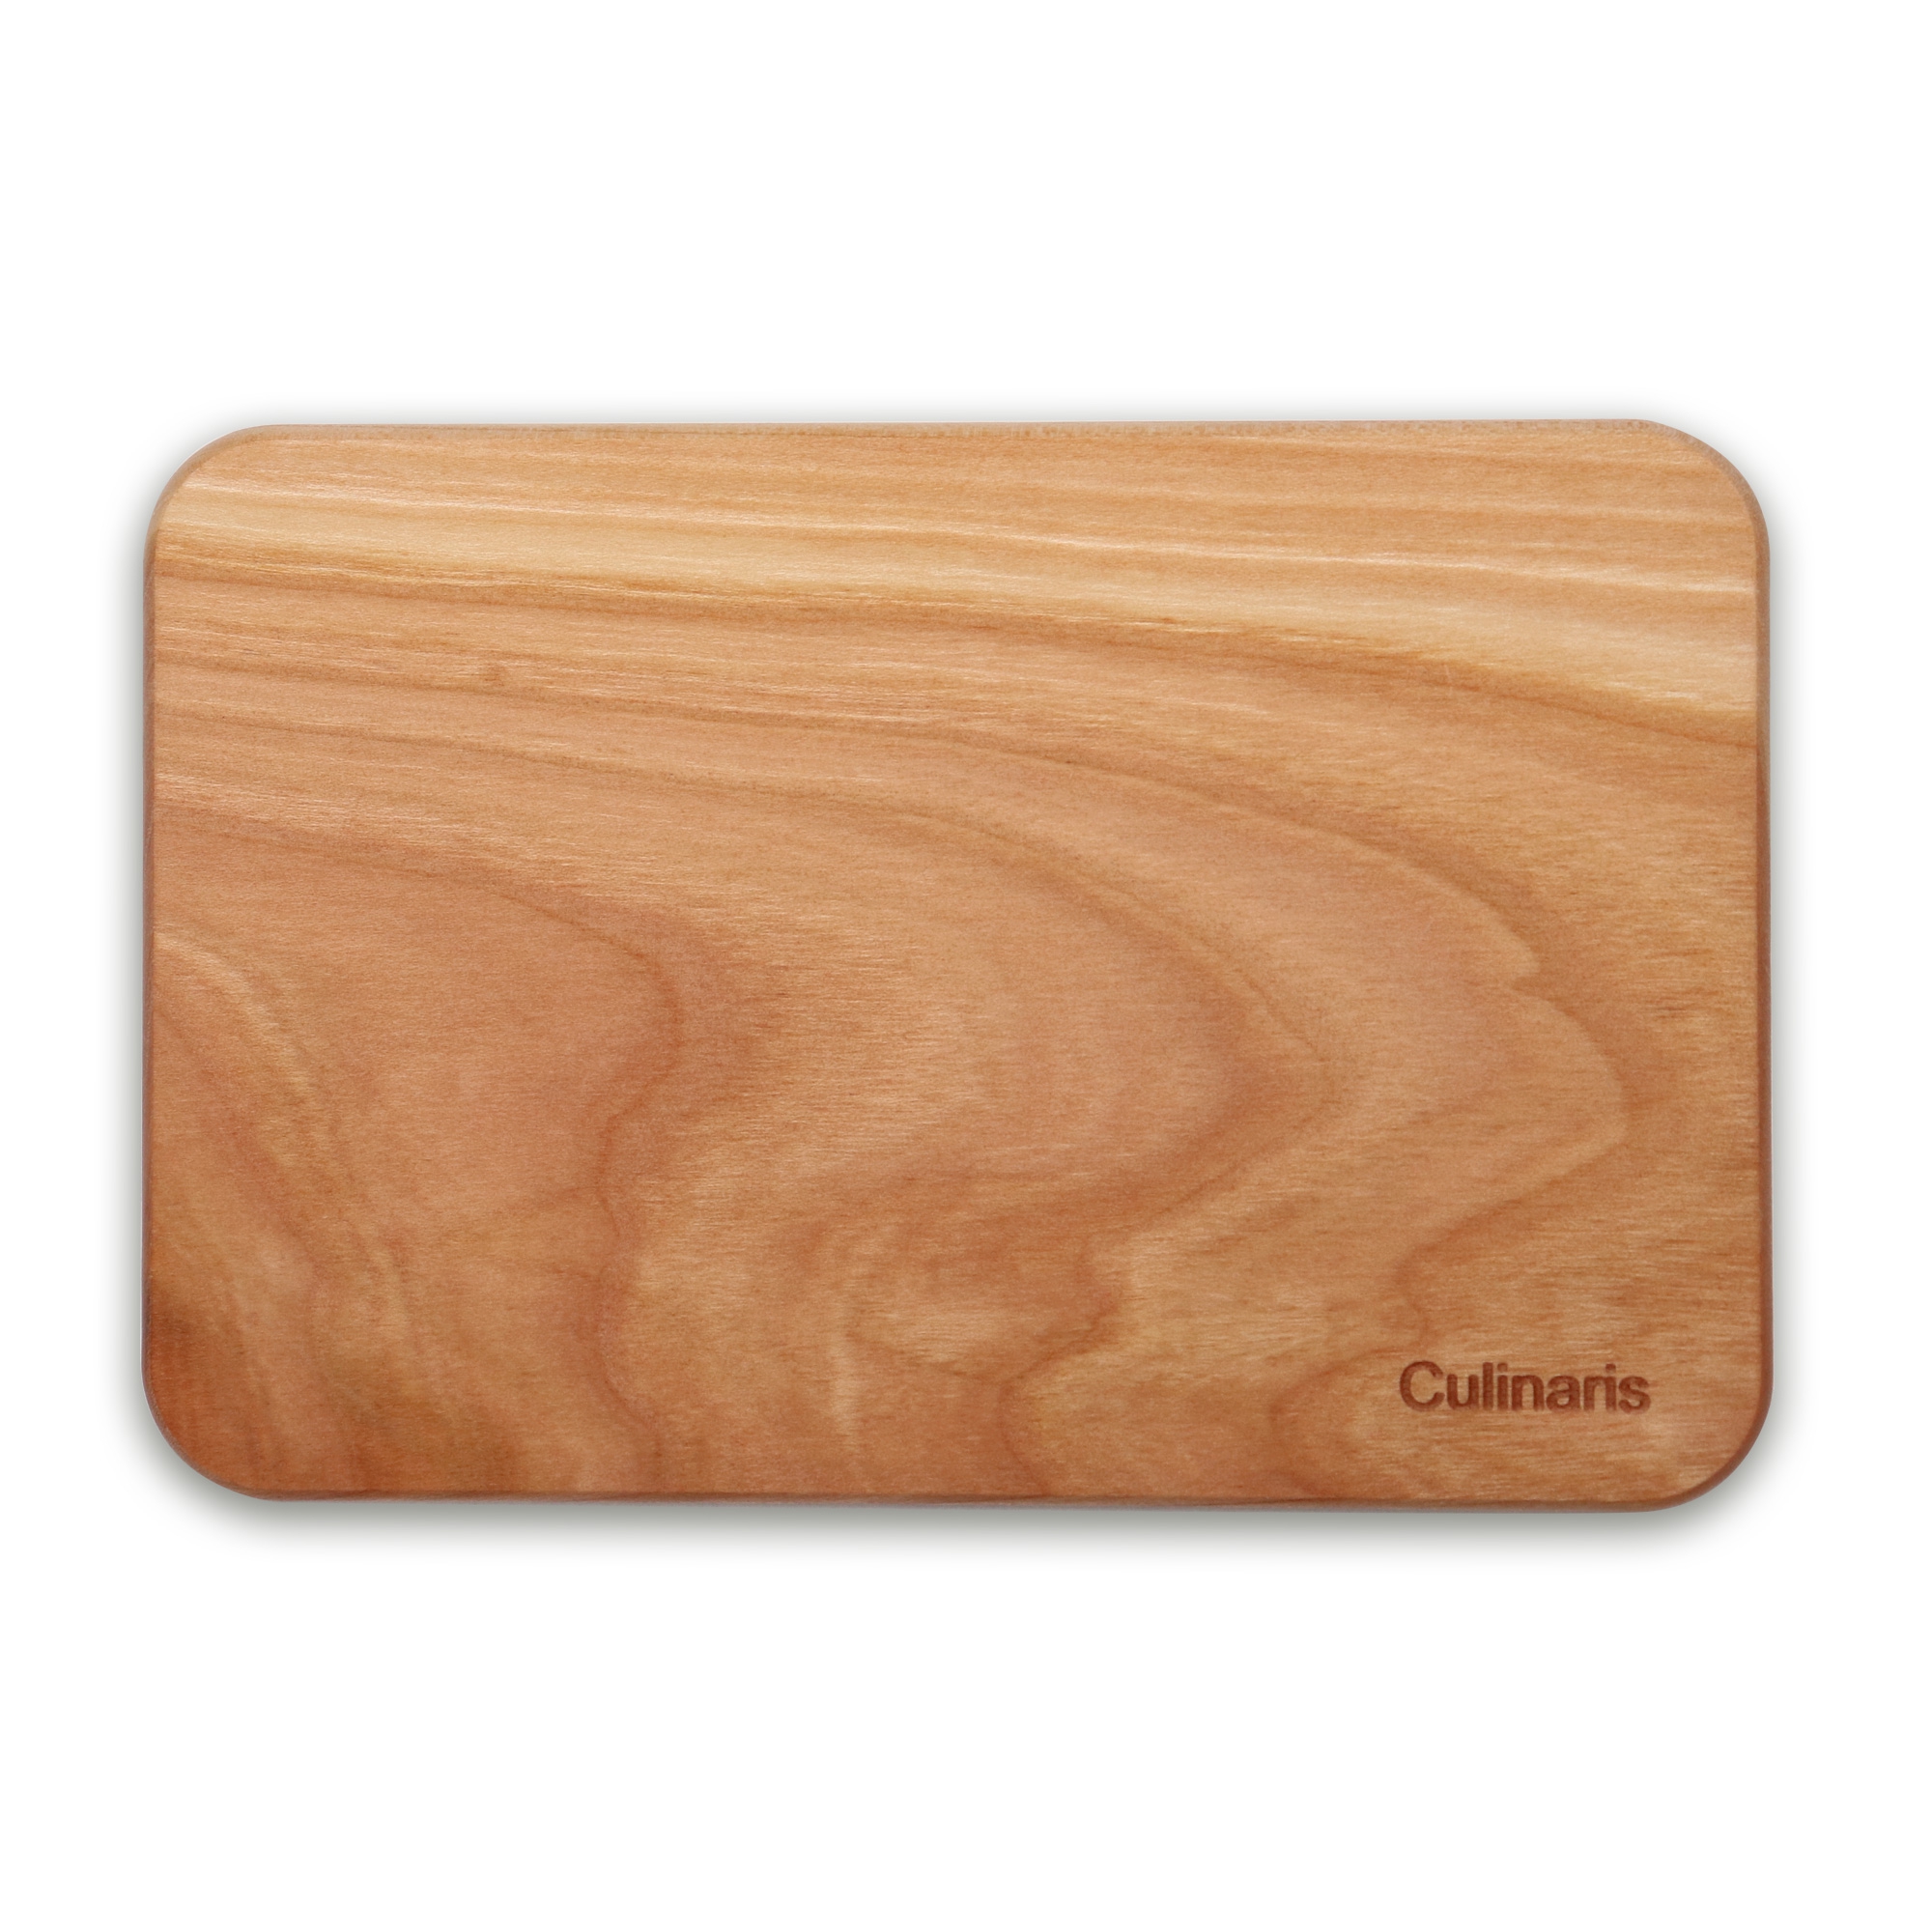 Culinaris - cutting board - cherry wood - 18 x 12 cm